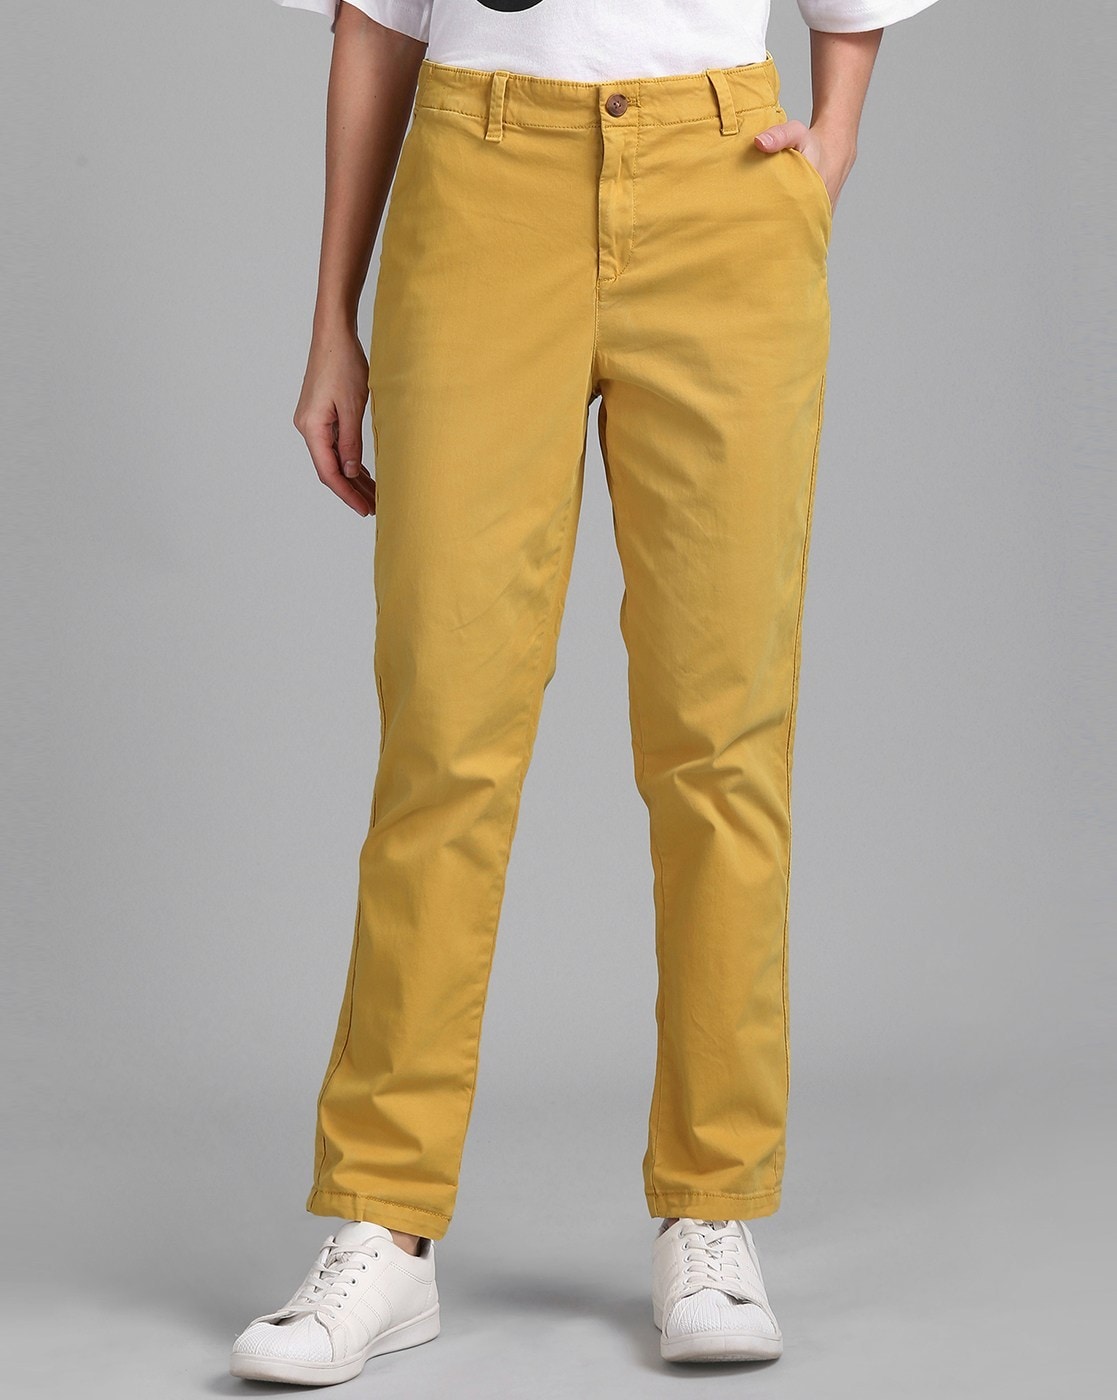 Buy Khaki Trousers  Pants for Women by GAP Online  Ajiocom